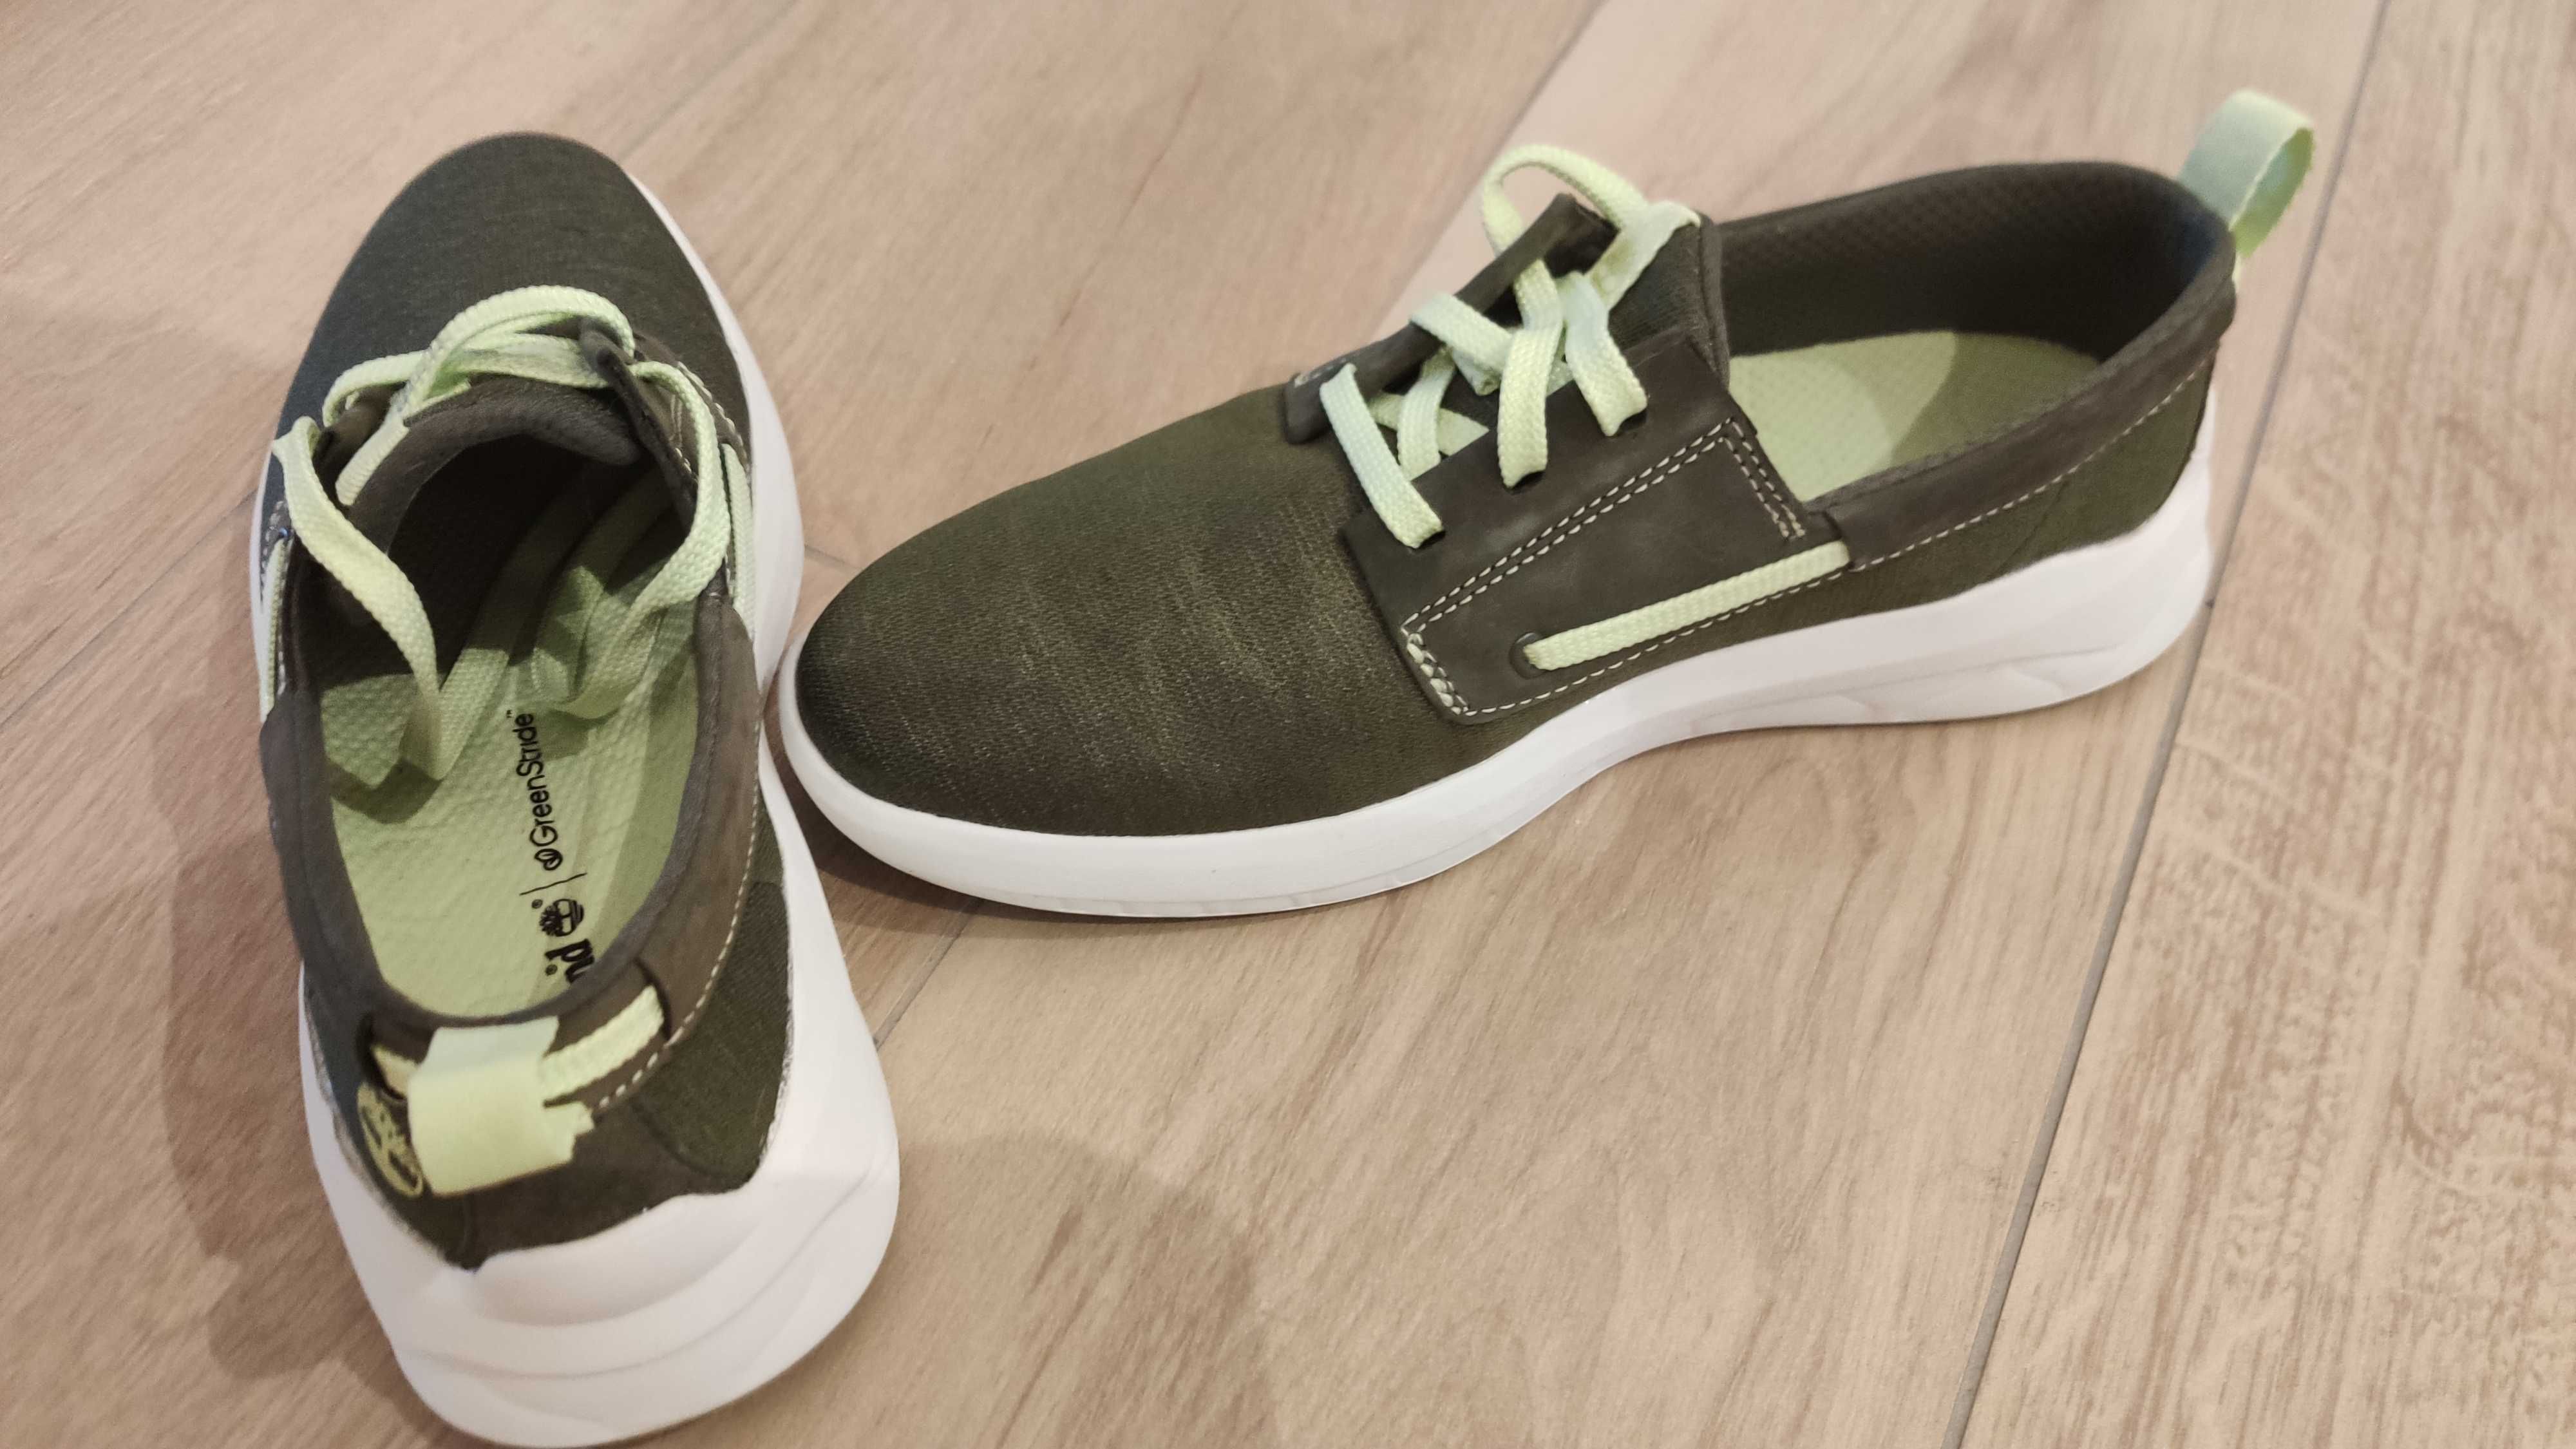 Buty Timberland BRADSTREET - zielone niskie sneakersy - rozmiar 41